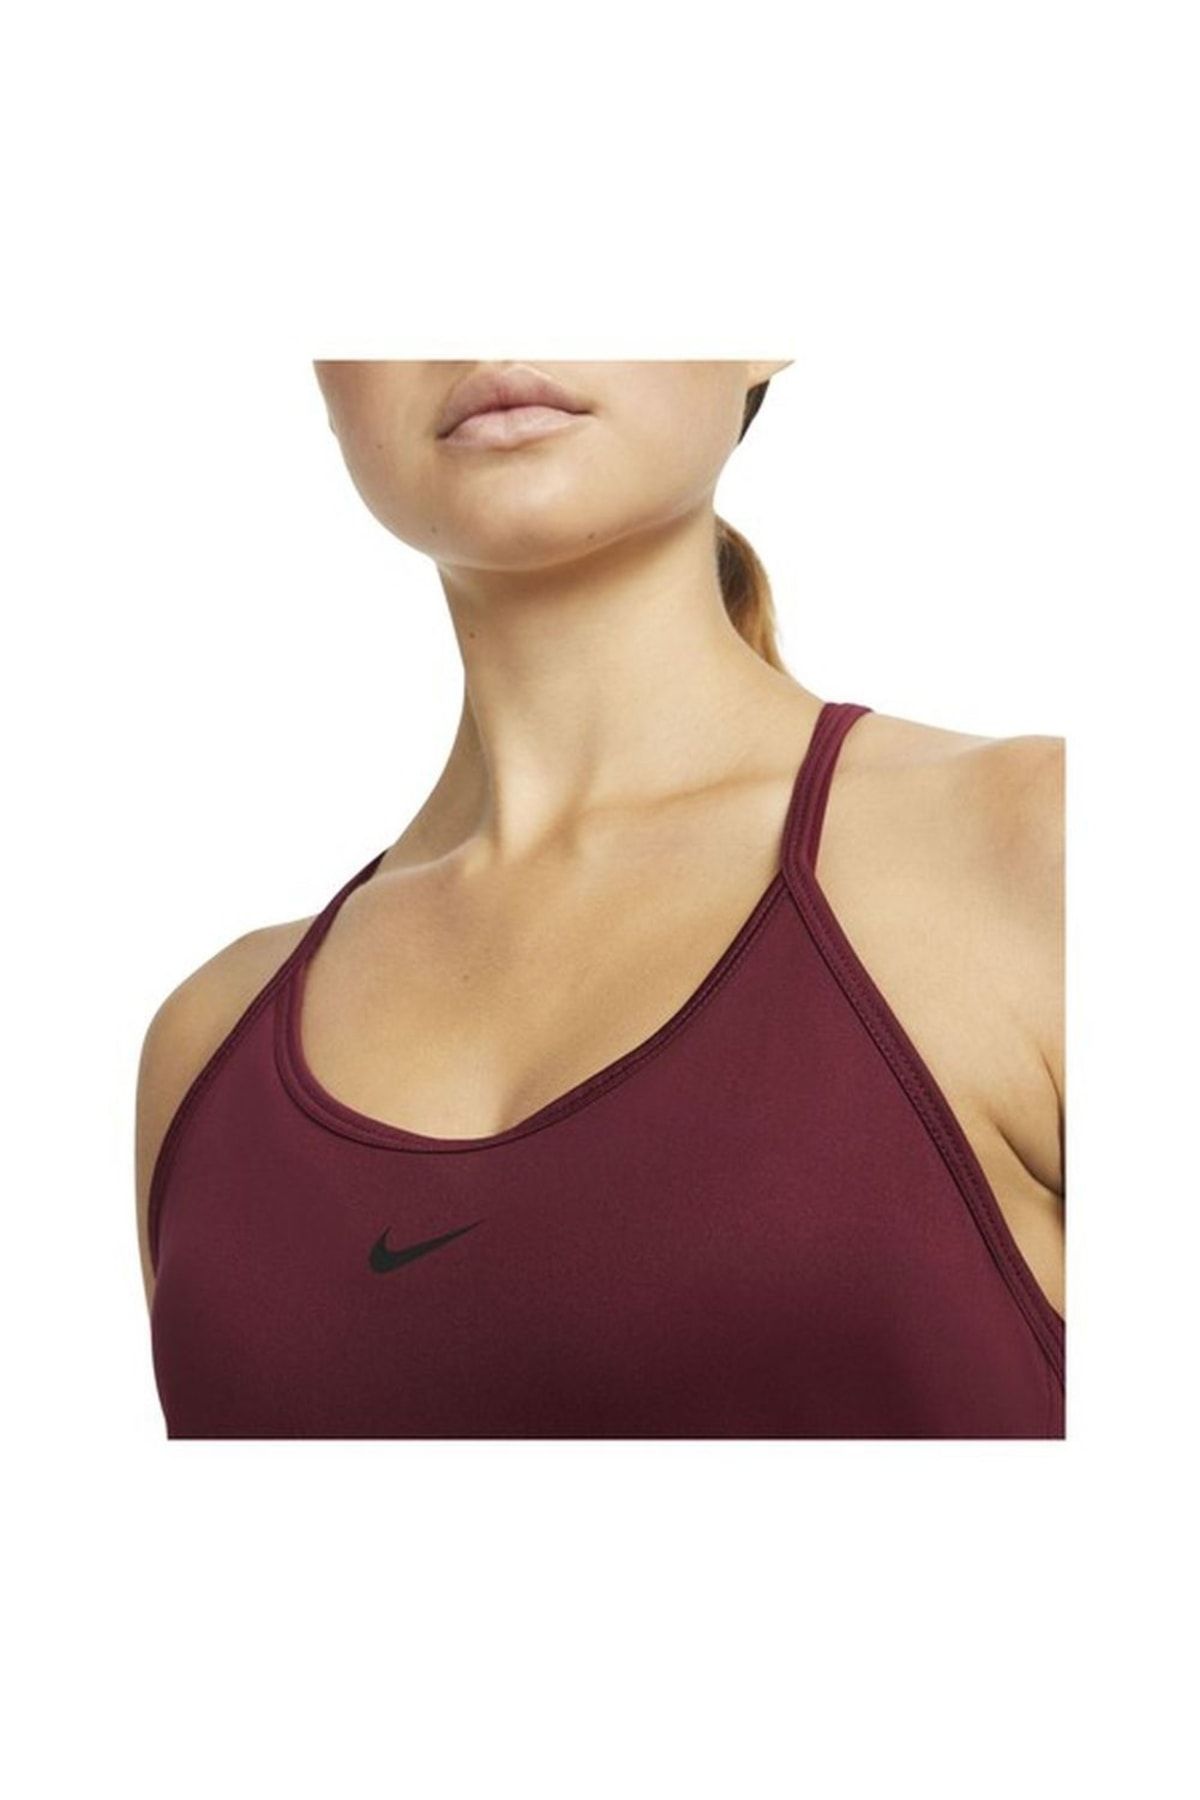 Nike Dri-fit One Elastika Standard Fit Kadın Atlet - Bordo-dd4941-638